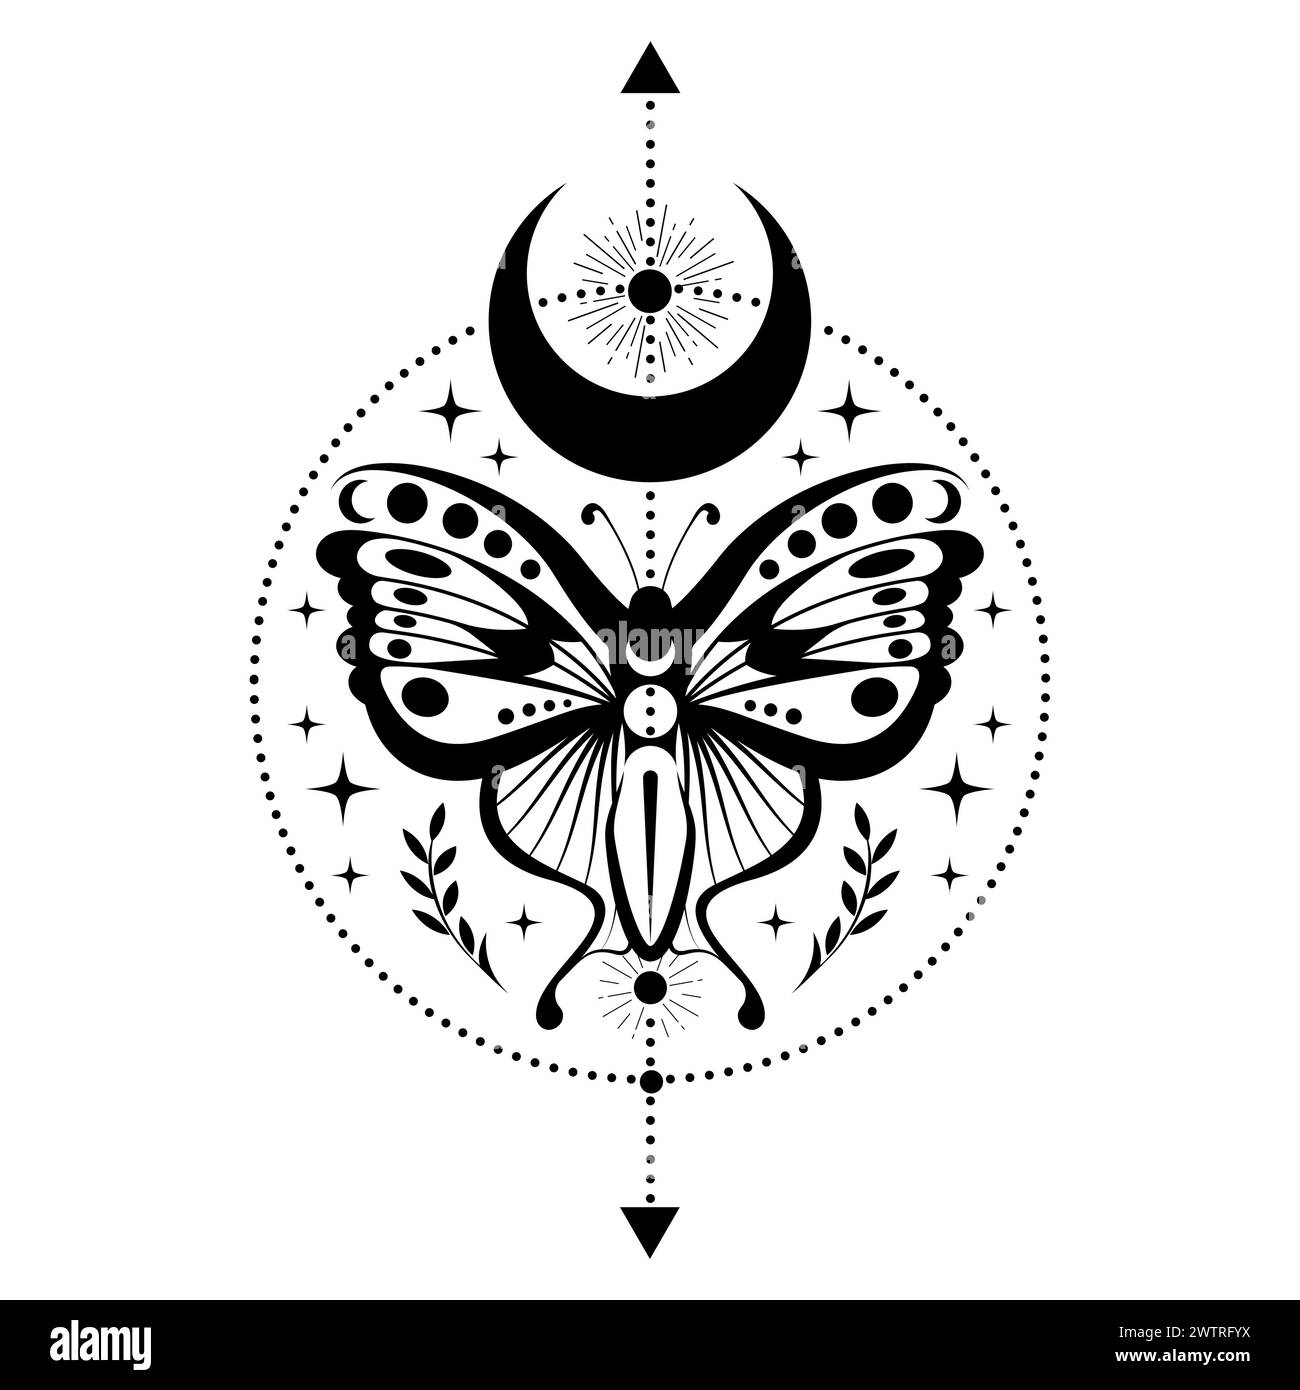 Papillon noir mystique, papillon magique et croissant de lune, symboles sacrés pour la sorcellerie, occulte, ésotérisme, impression, affiche, tatouage. Vecteur païen magique Illustration de Vecteur